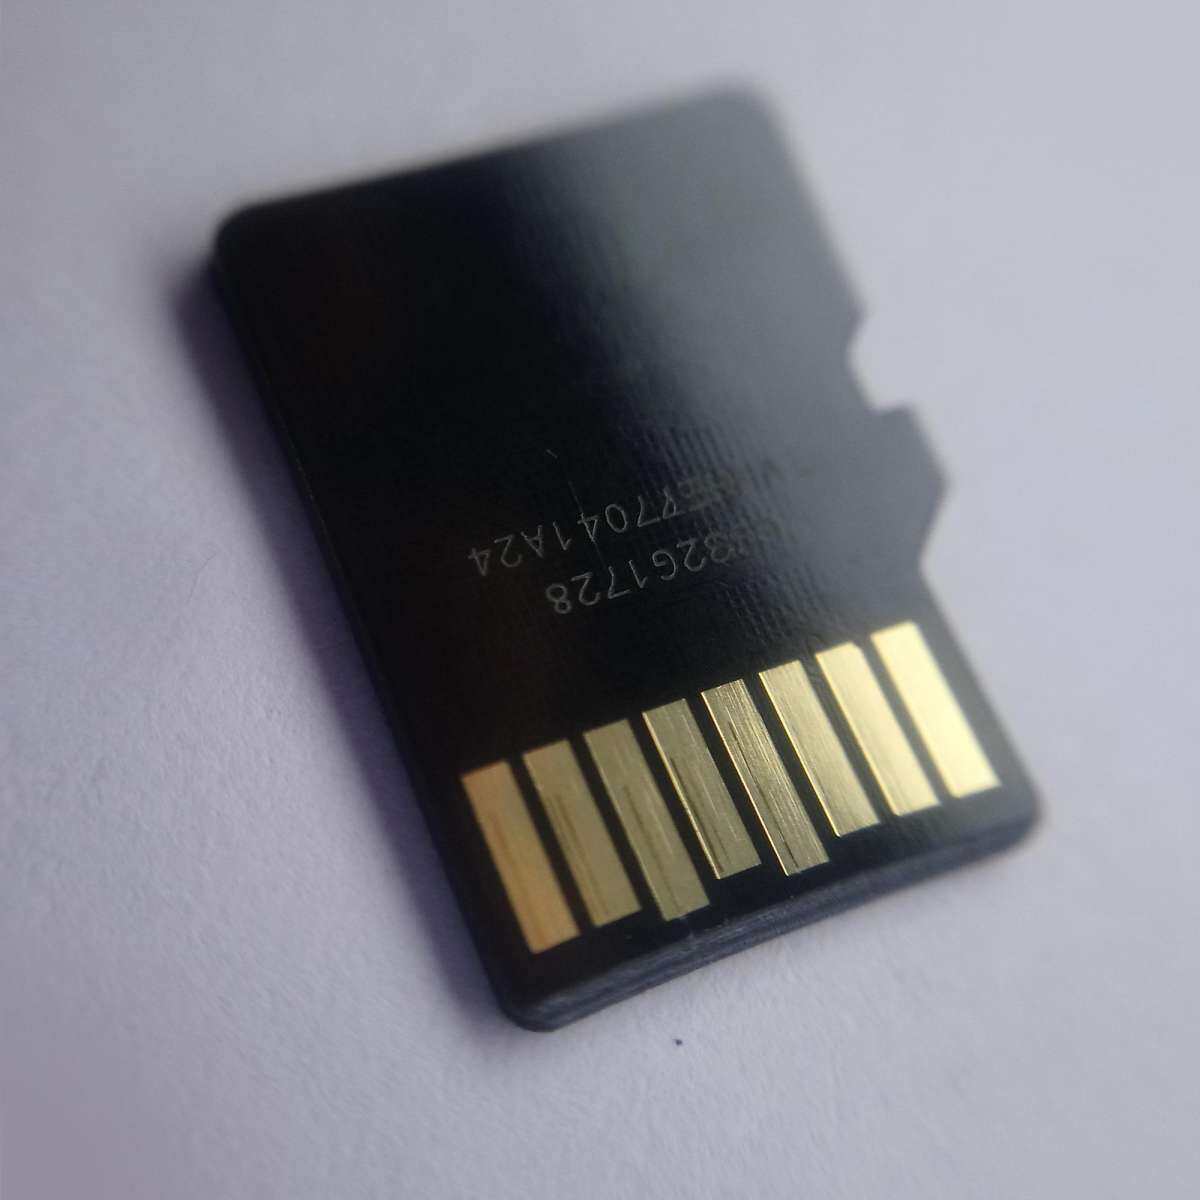 ข้อมูลเพิ่มเติมของ ถูกสุดๆ (ของแท้) Kingston เมมโมรี่การ์ด 64GB SDHC/SDXC Class 10 UHS-I Micro SD Card with Adapter